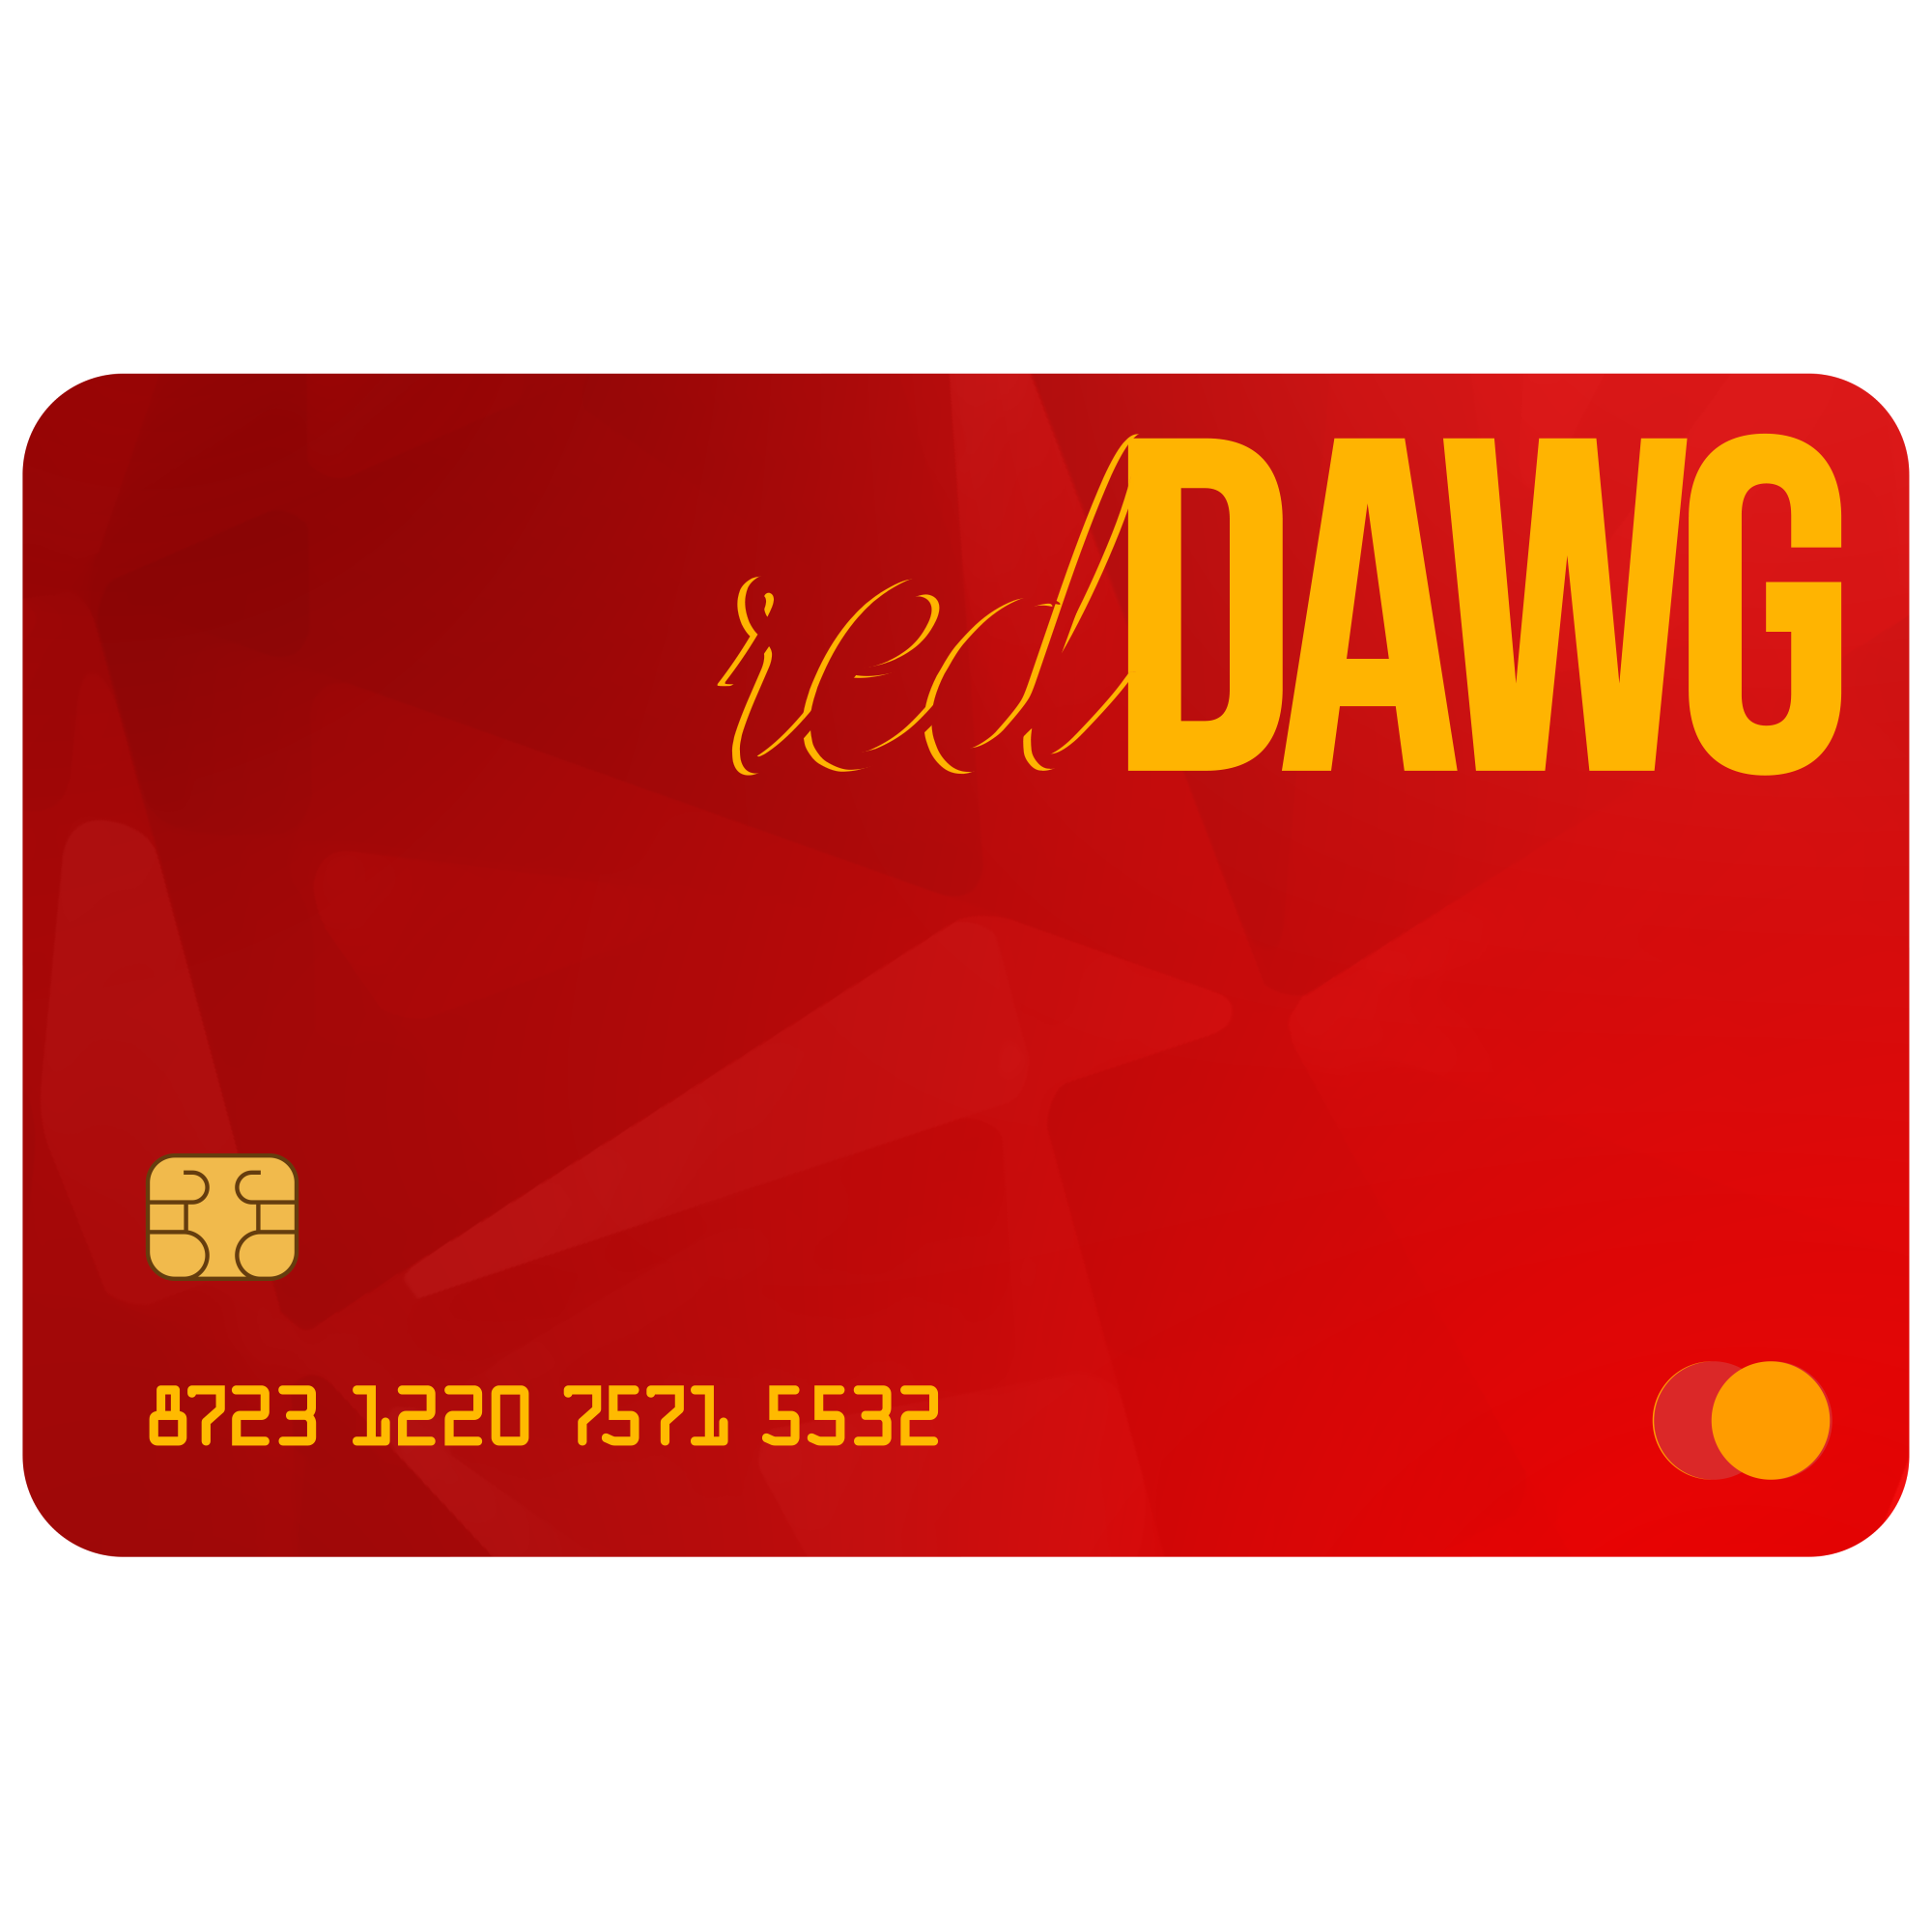 redDAWG CashCard